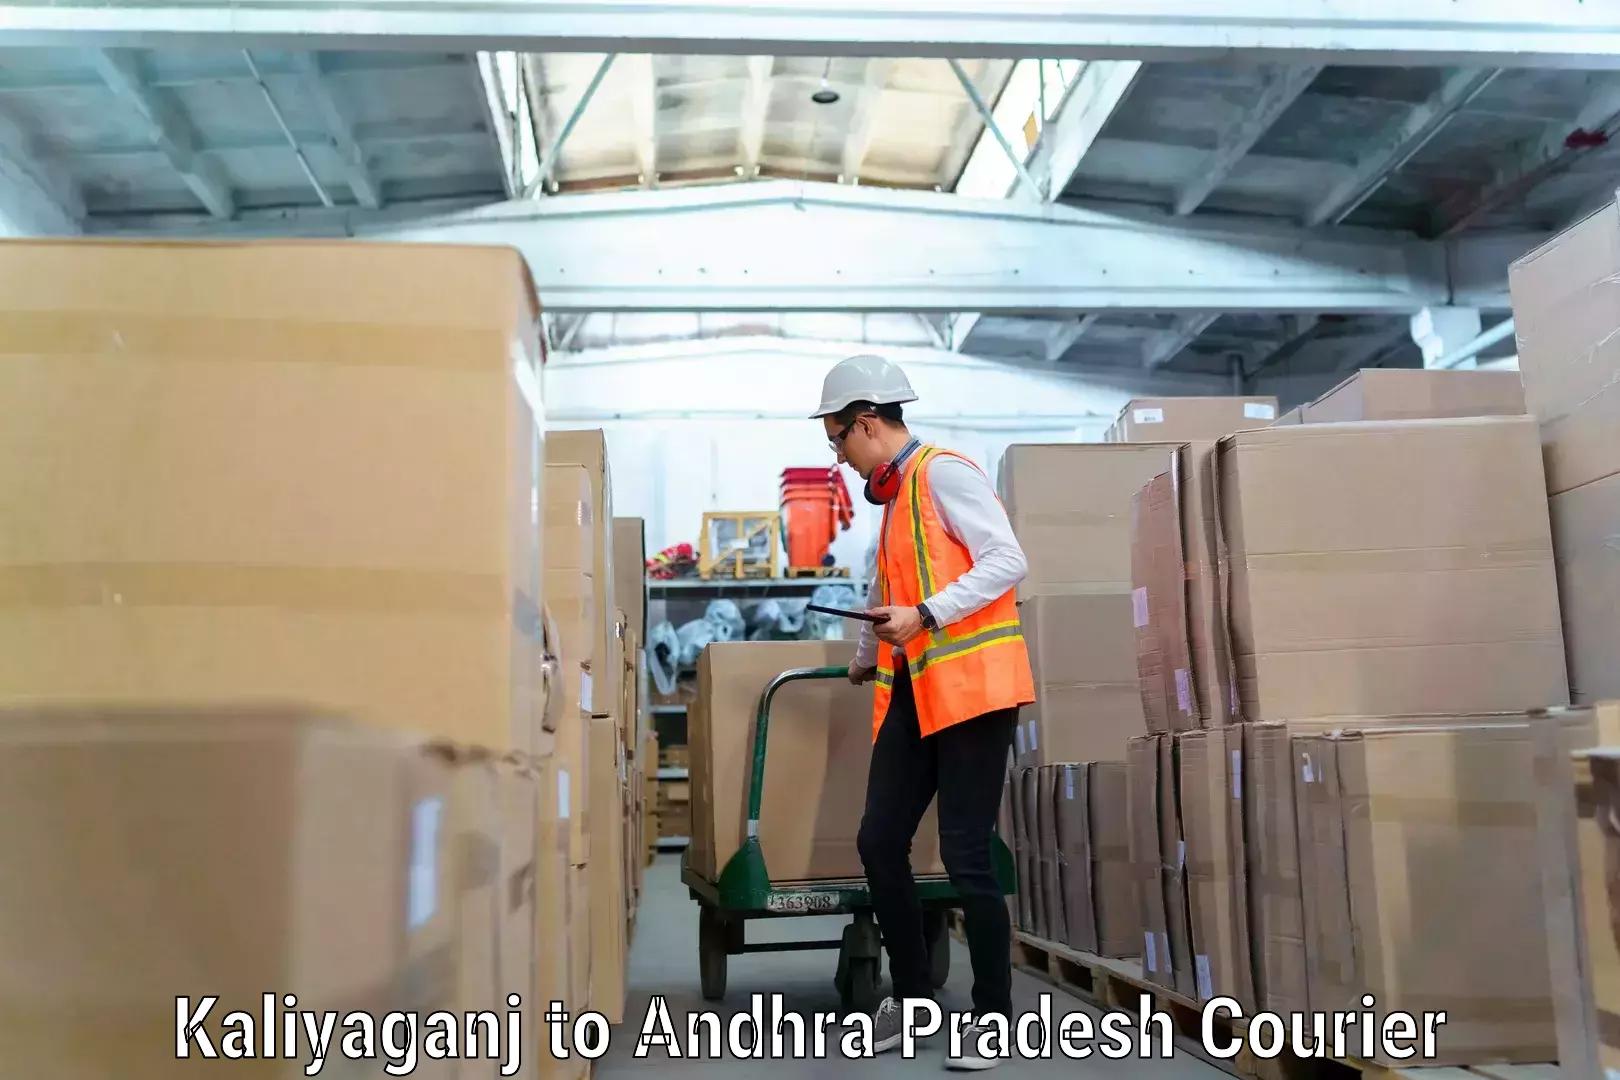 Trusted relocation experts Kaliyaganj to Andhra Pradesh